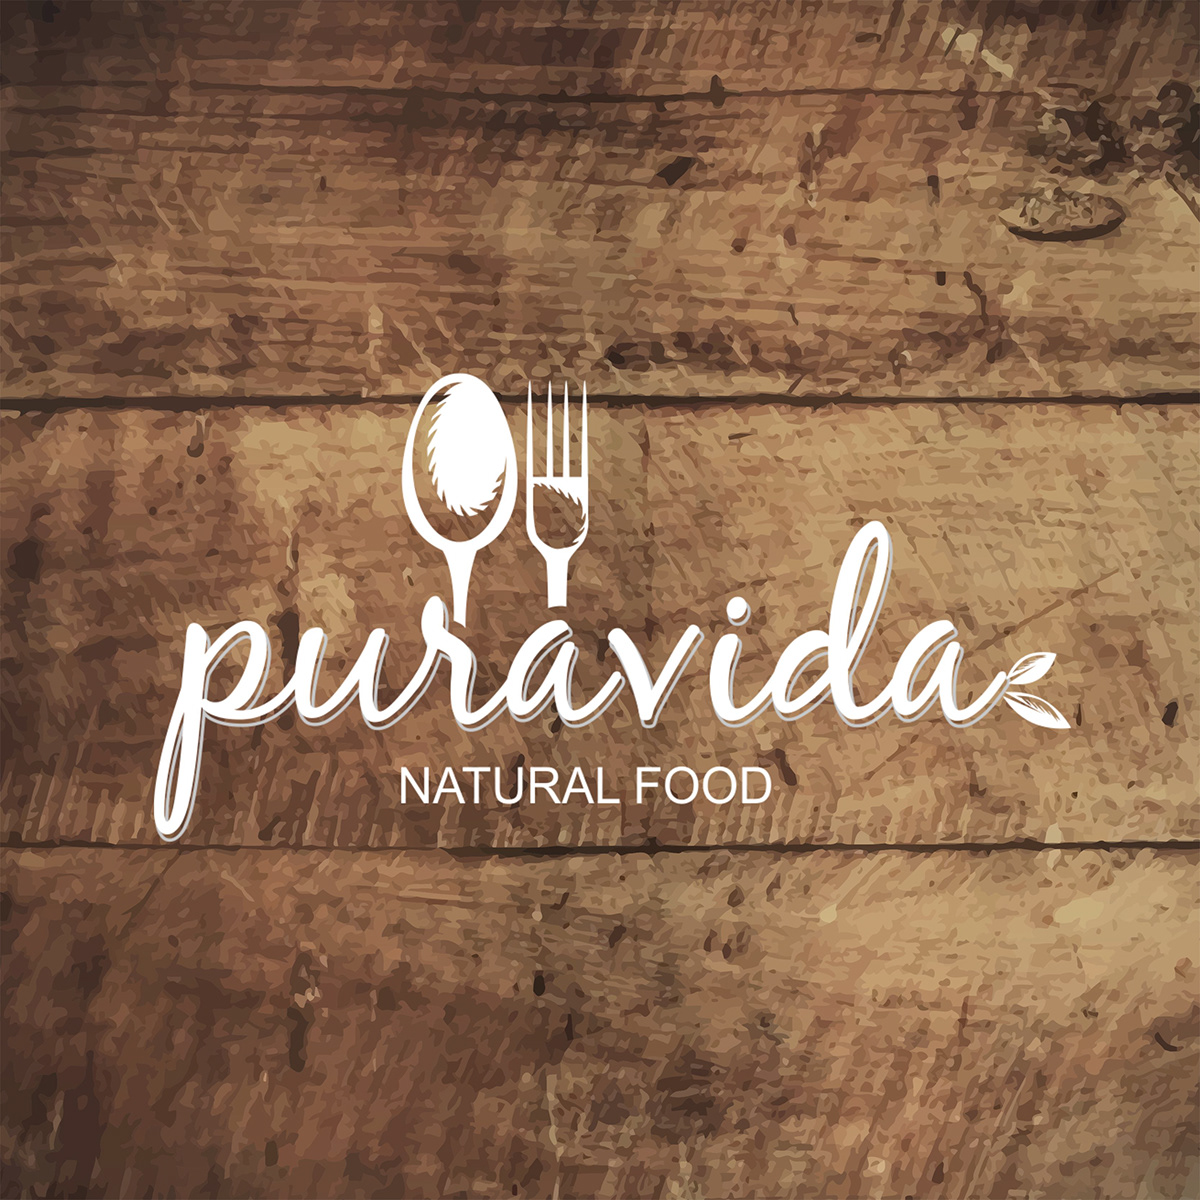 puravida Food  foodie natural marca logo branding  restaurante vegan